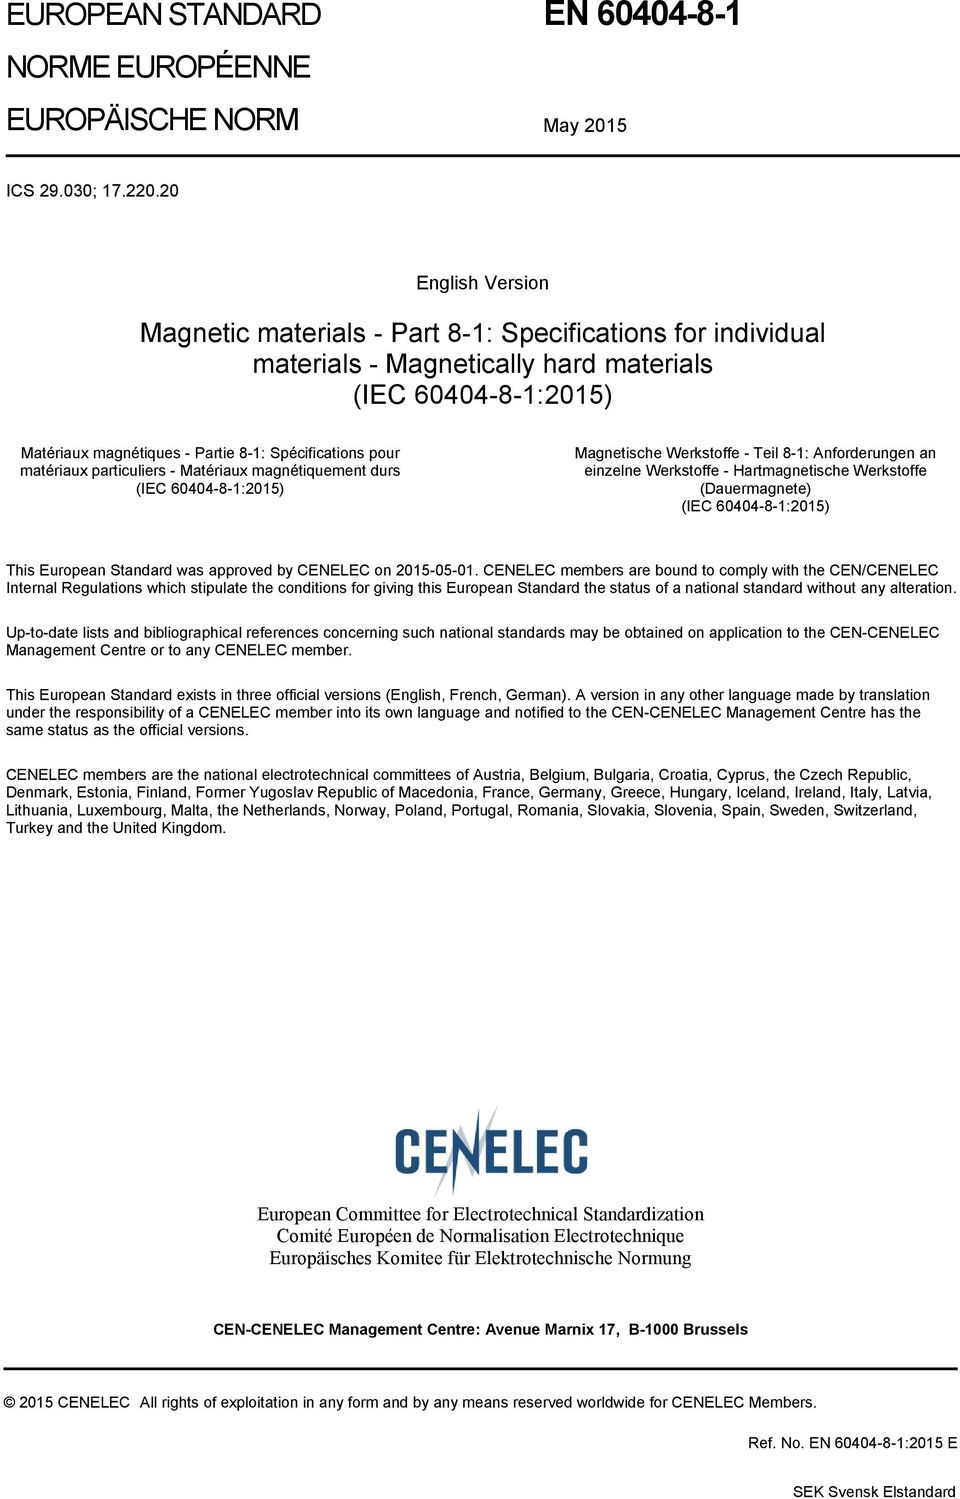 matériaux particuliers - Matériaux magnétiquement durs (IEC 60404-8-1:2015) Magnetische Werkstoffe - Teil 8-1: Anforderungen an einzelne Werkstoffe - Hartmagnetische Werkstoffe (Dauermagnete) (IEC